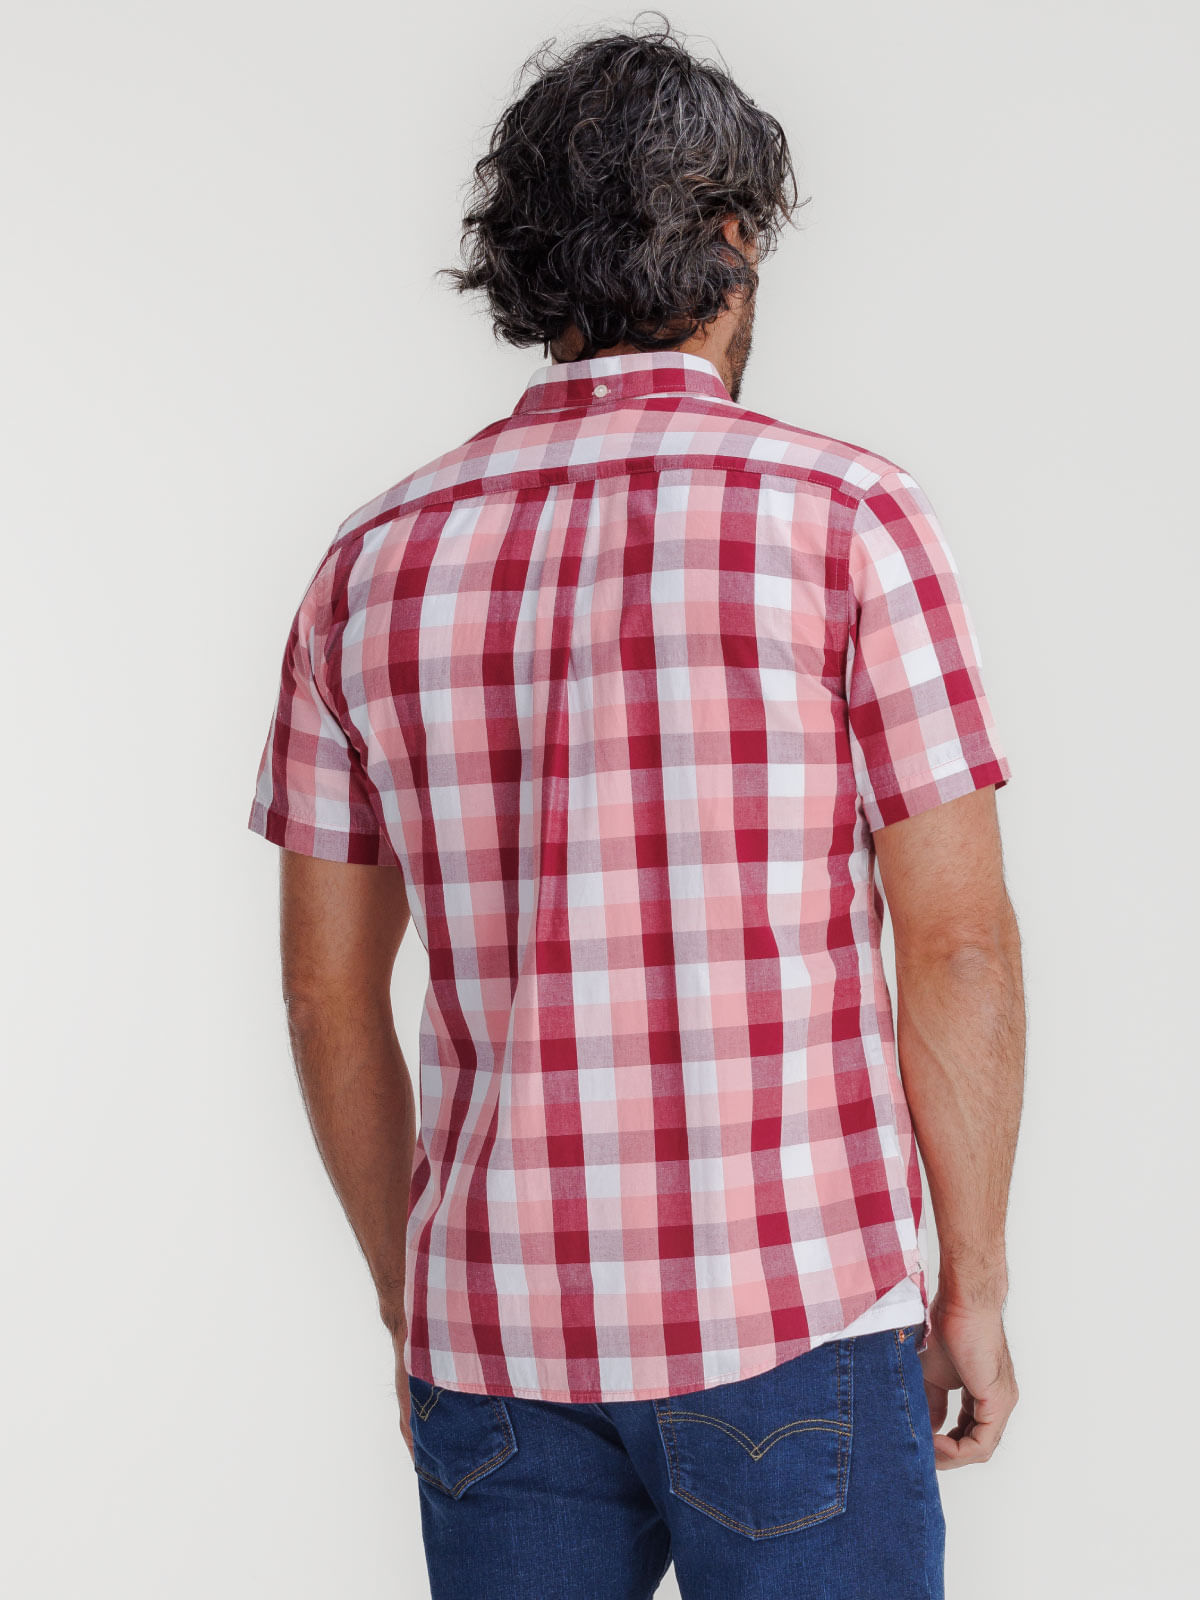 tenaz Específico Disipación Camisa Levi'S® Classic One Pocket Para Hombre